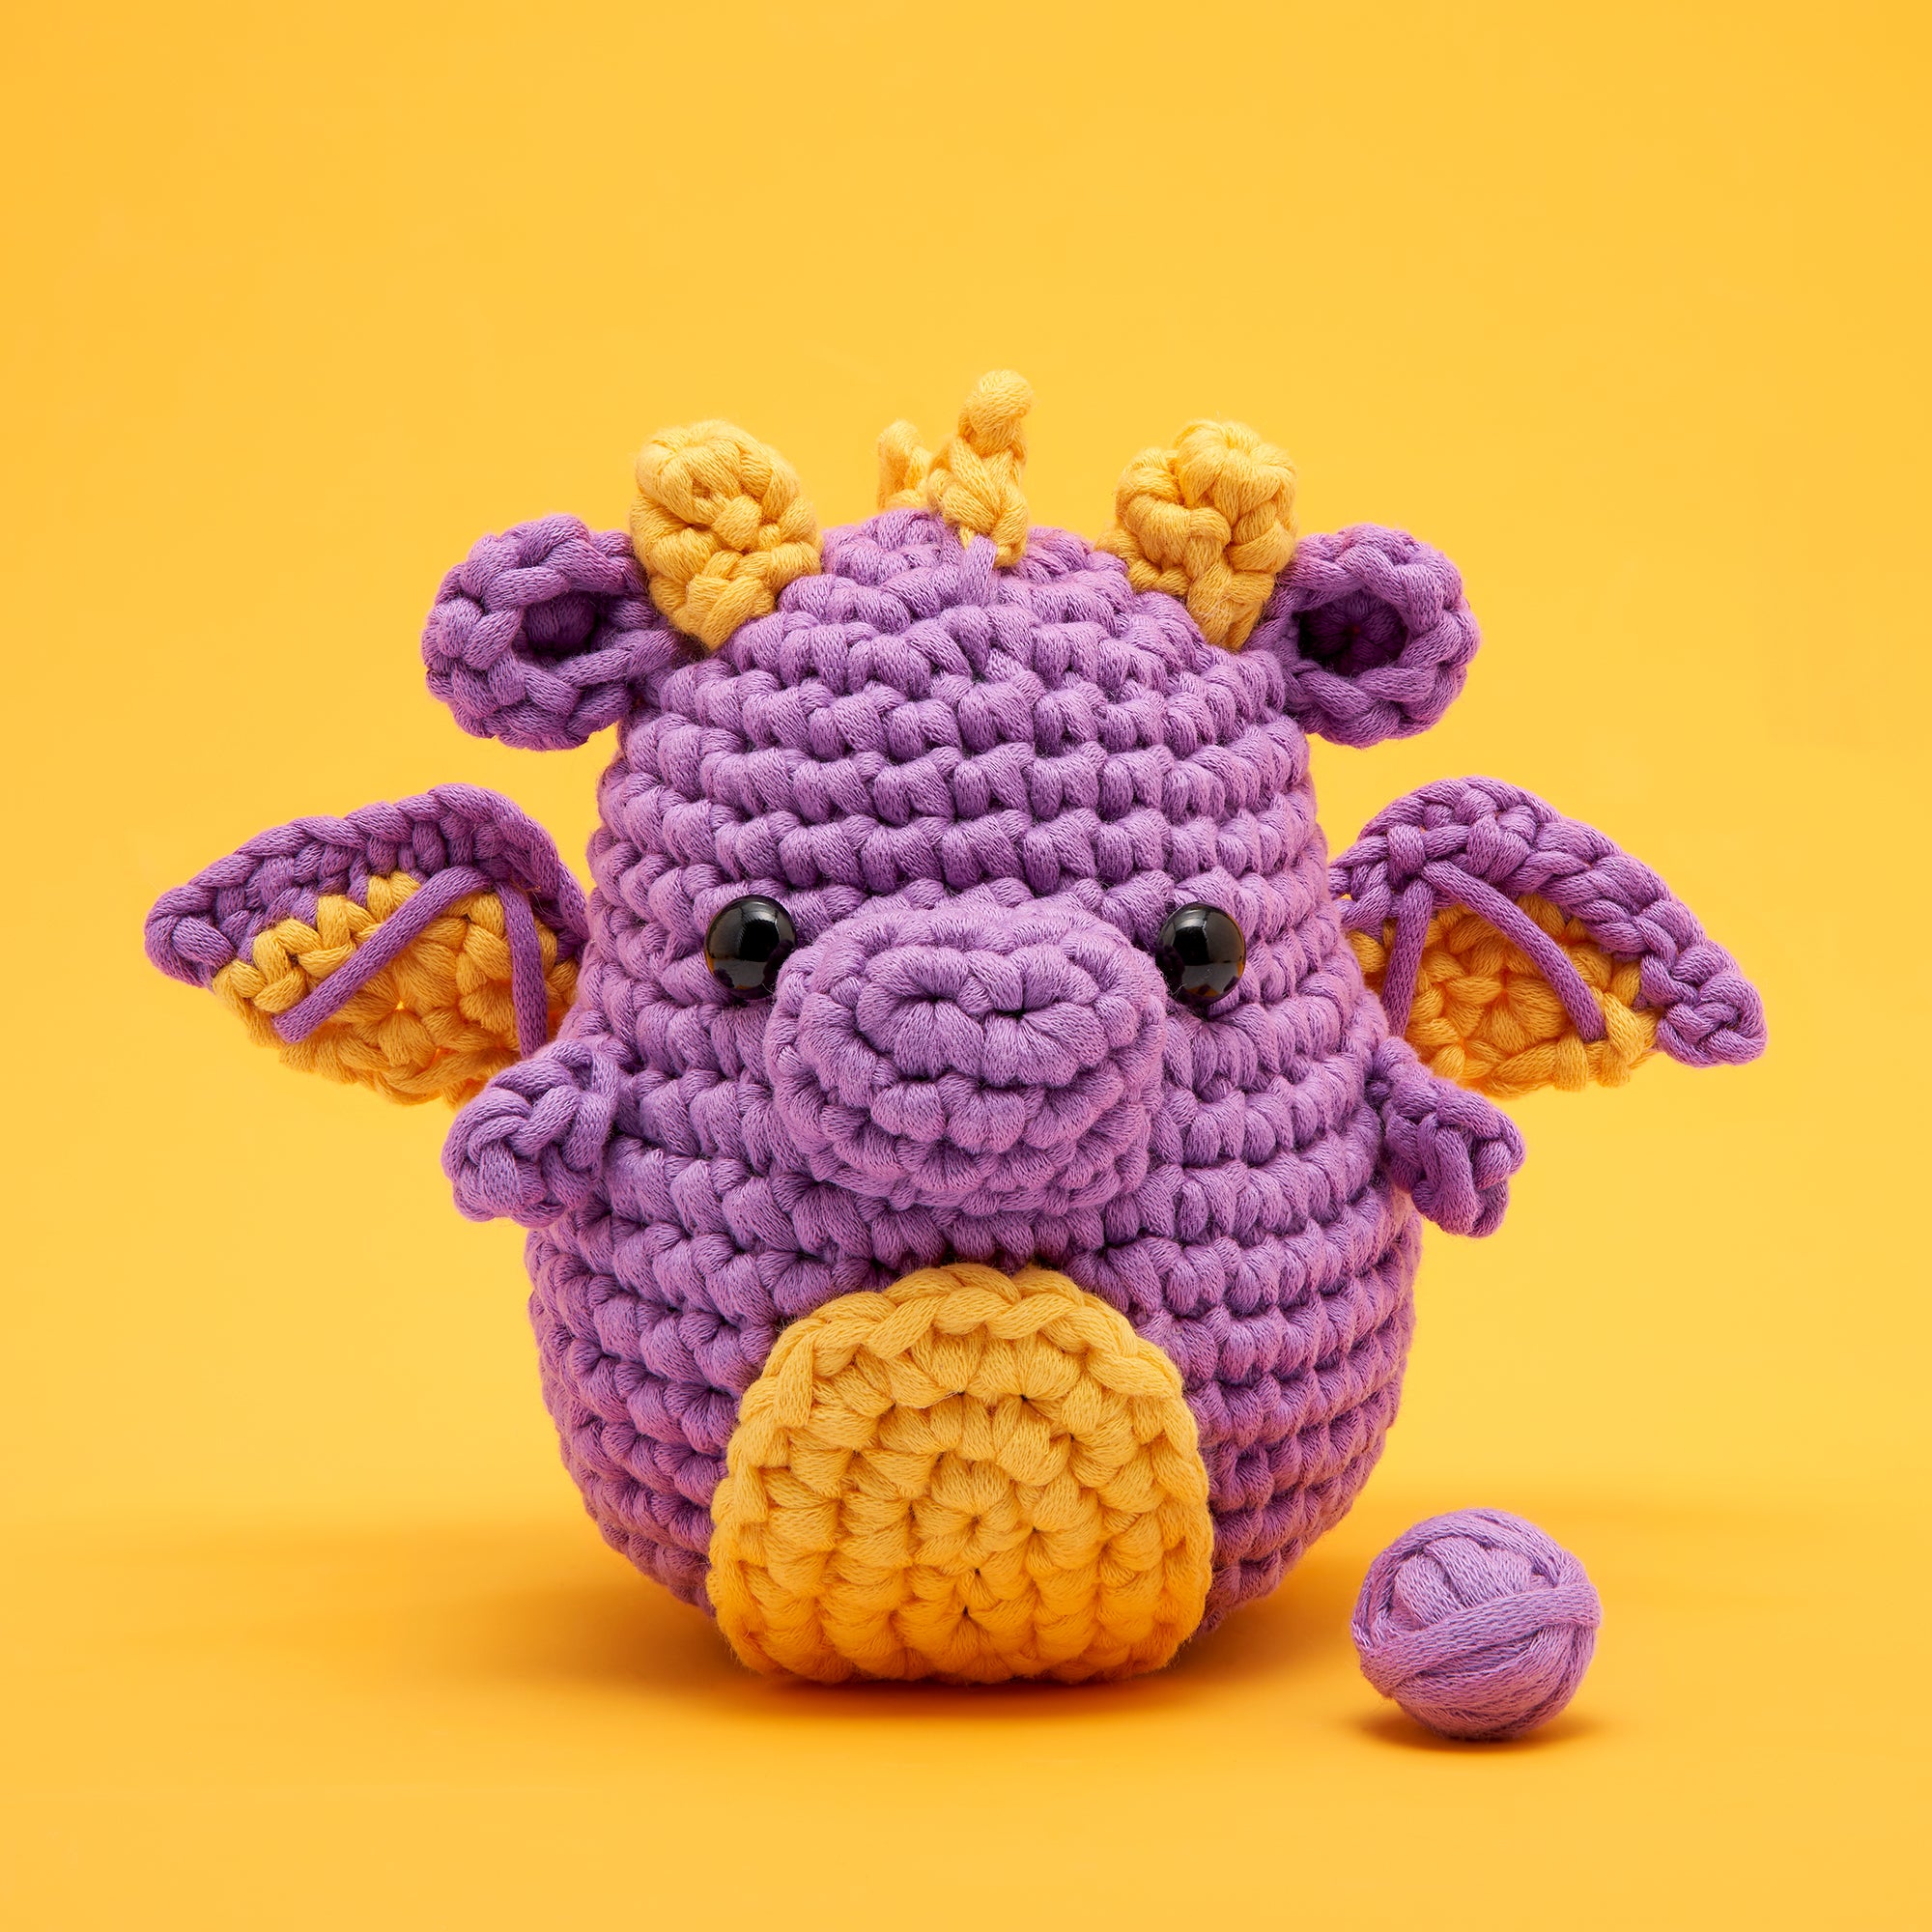 Wobbles Crochet Animal Kit DIY Animal Woobles Crochet Kit For